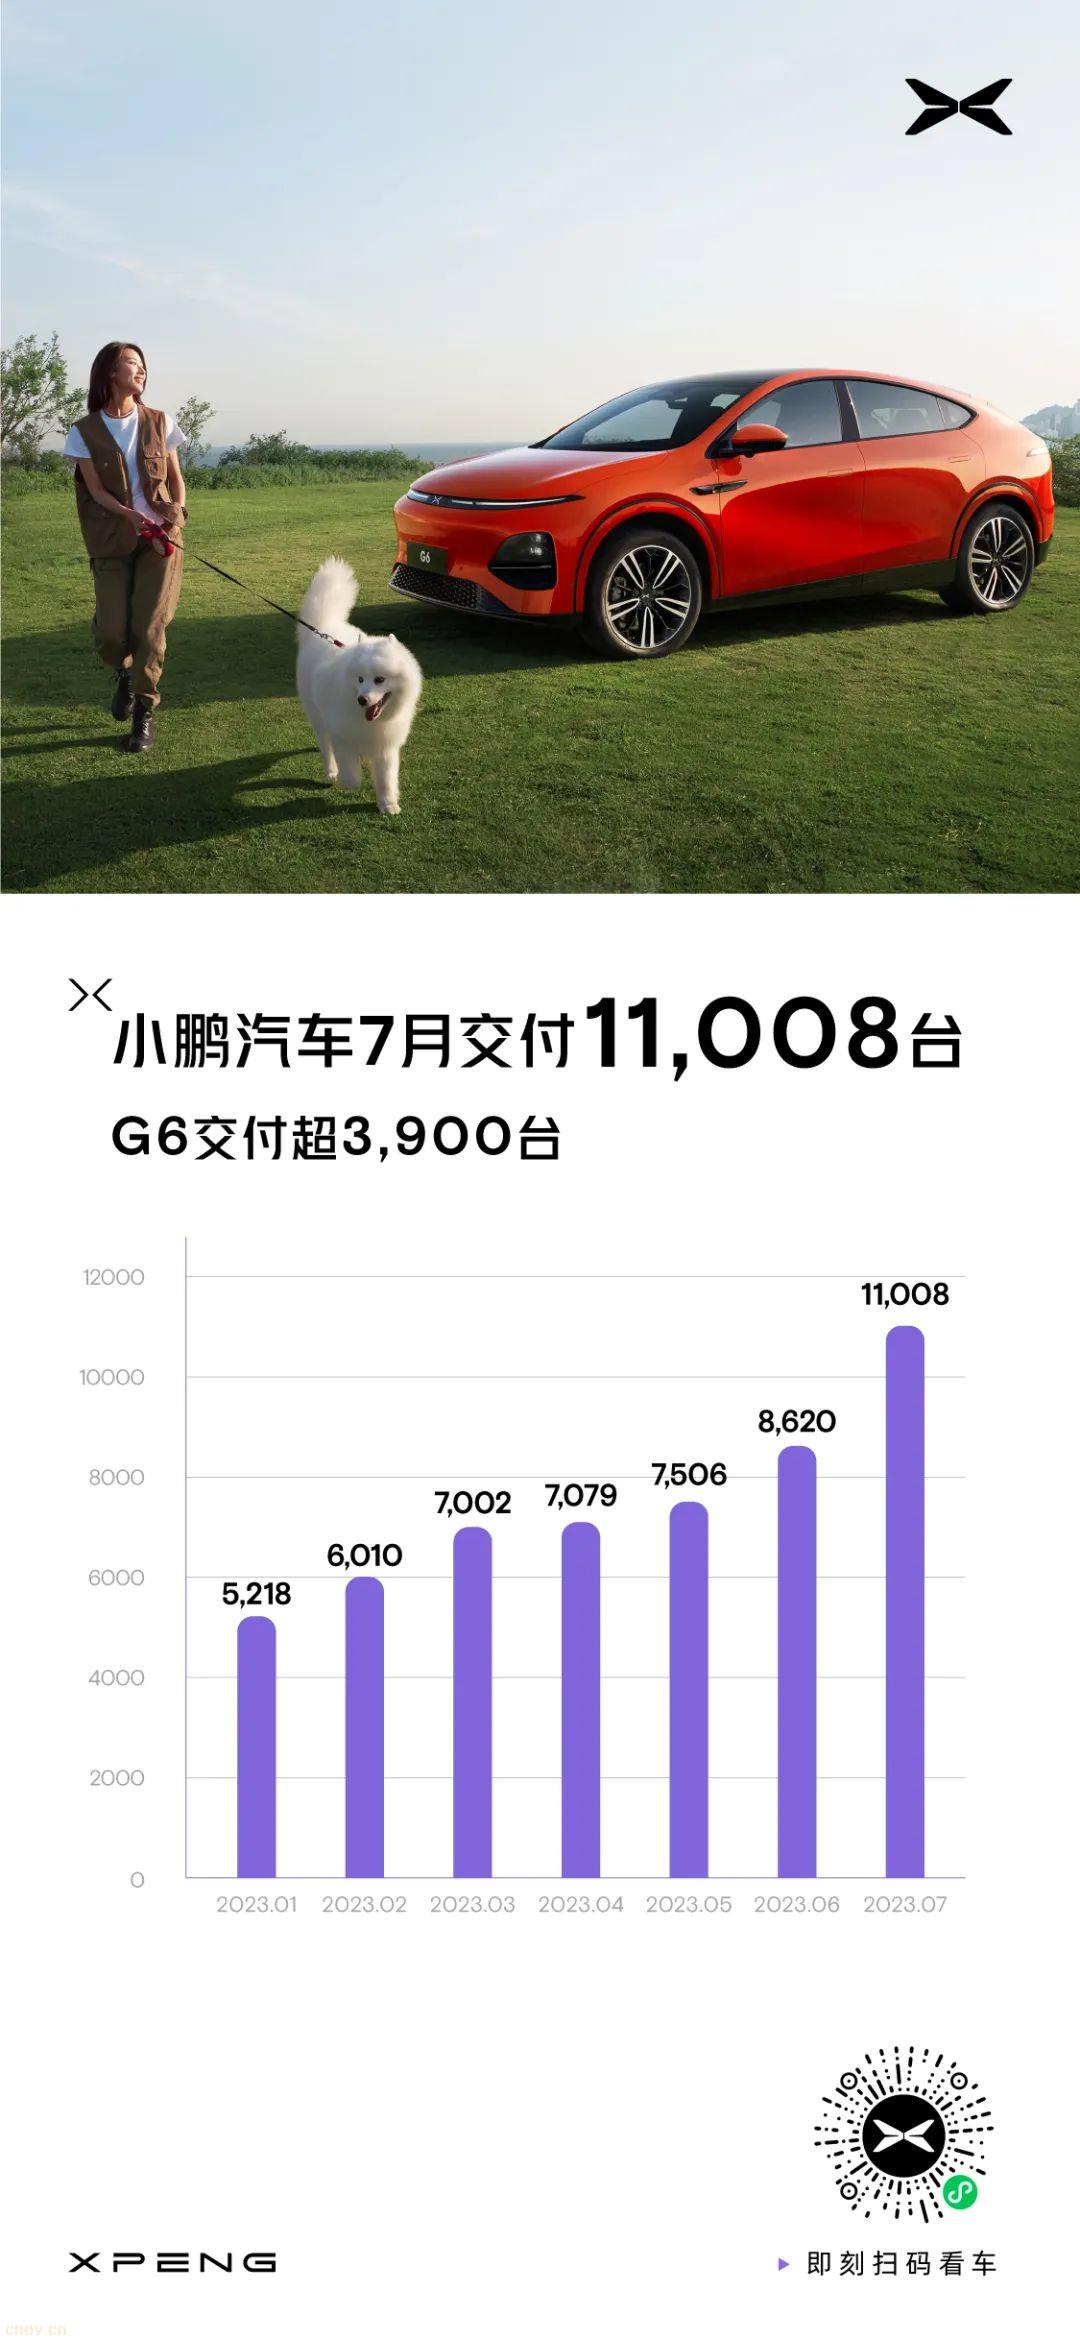 小鵬汽車7月交付11,008臺，G6首月交付超3,900臺